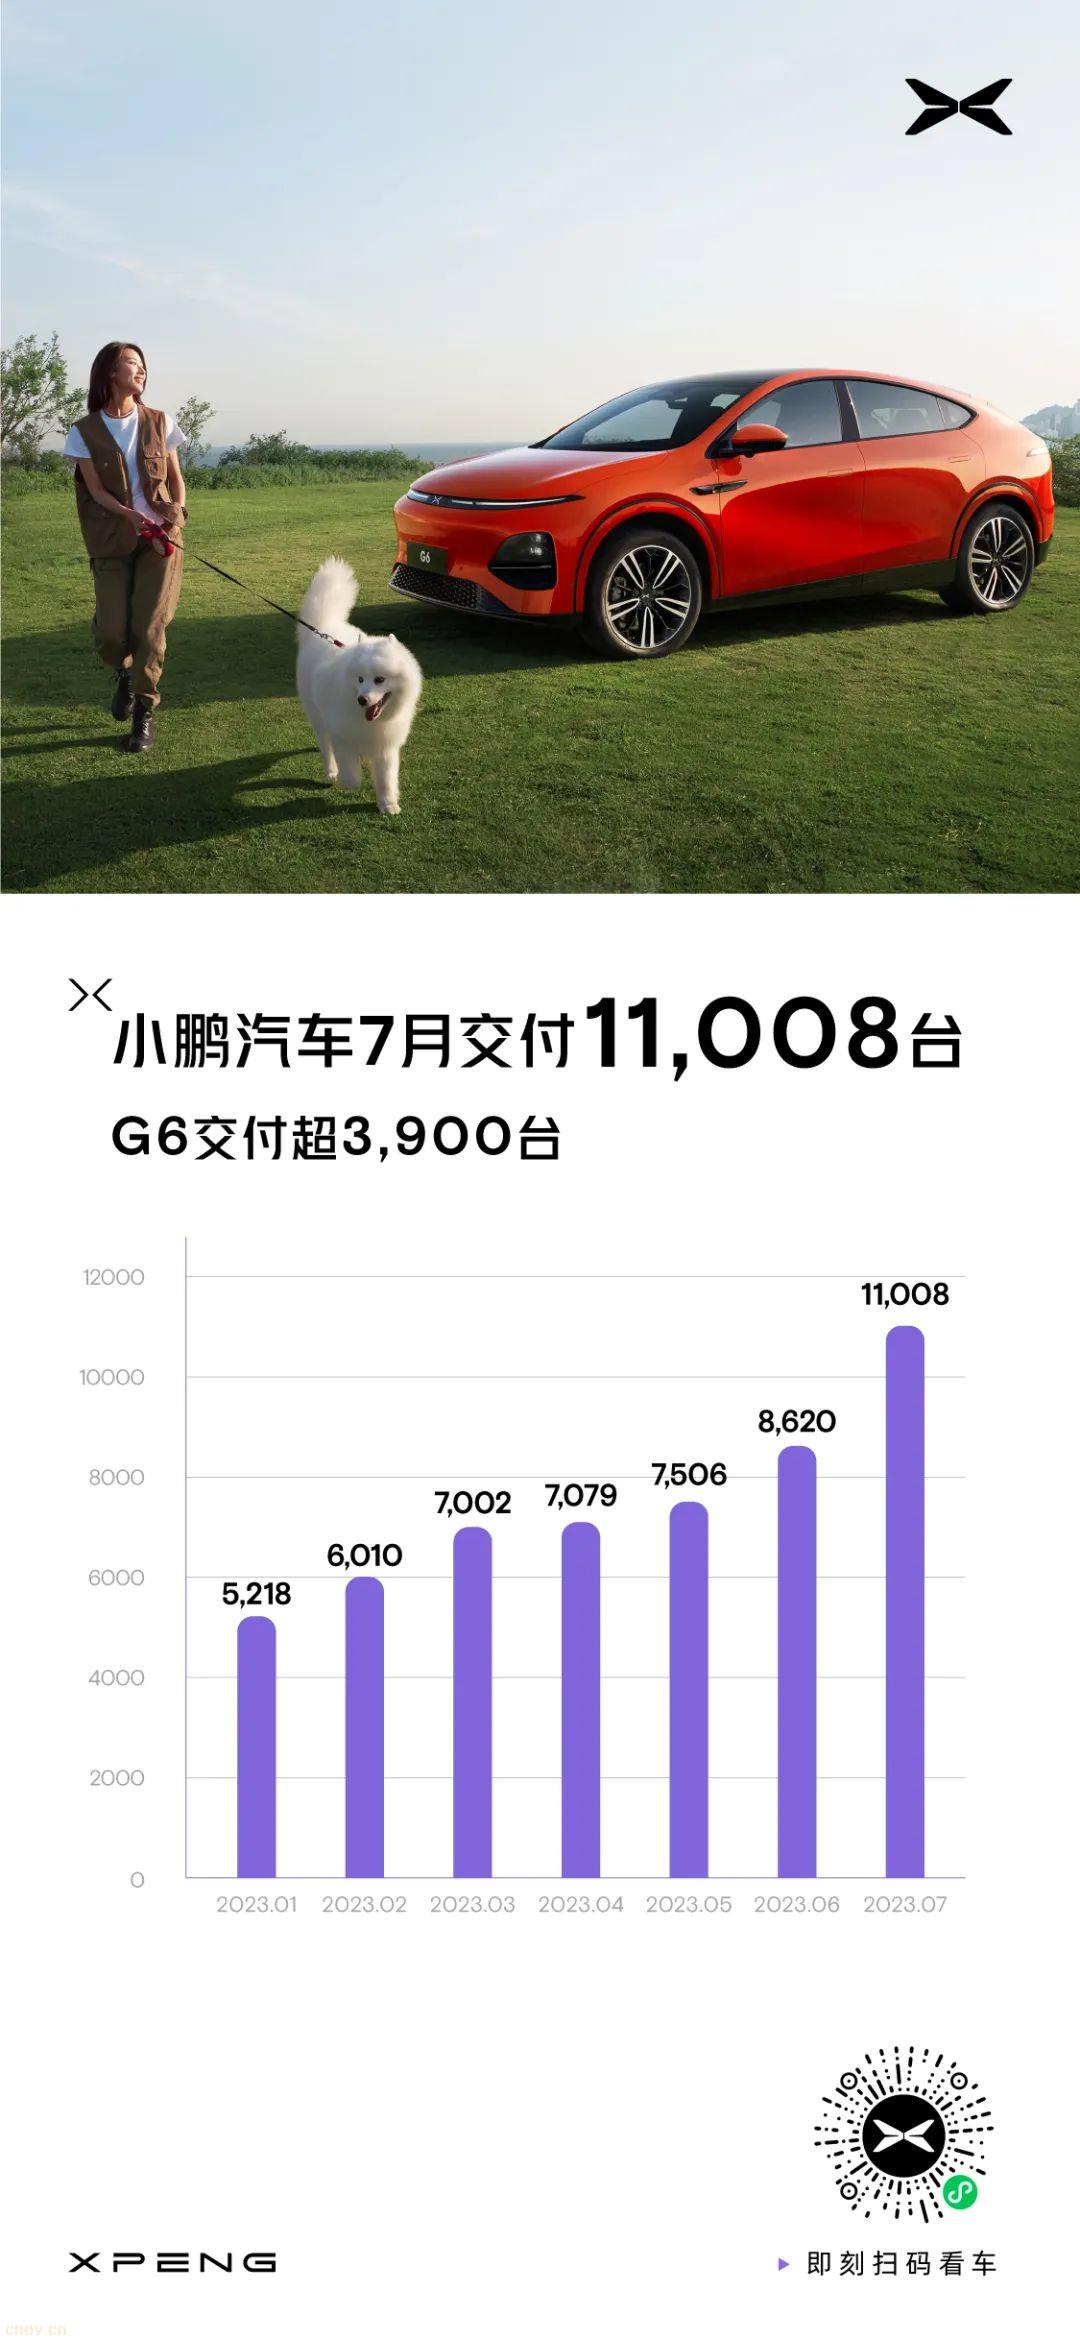 小鵬汽車7月交付11,008臺，G6首月交付超3,900臺